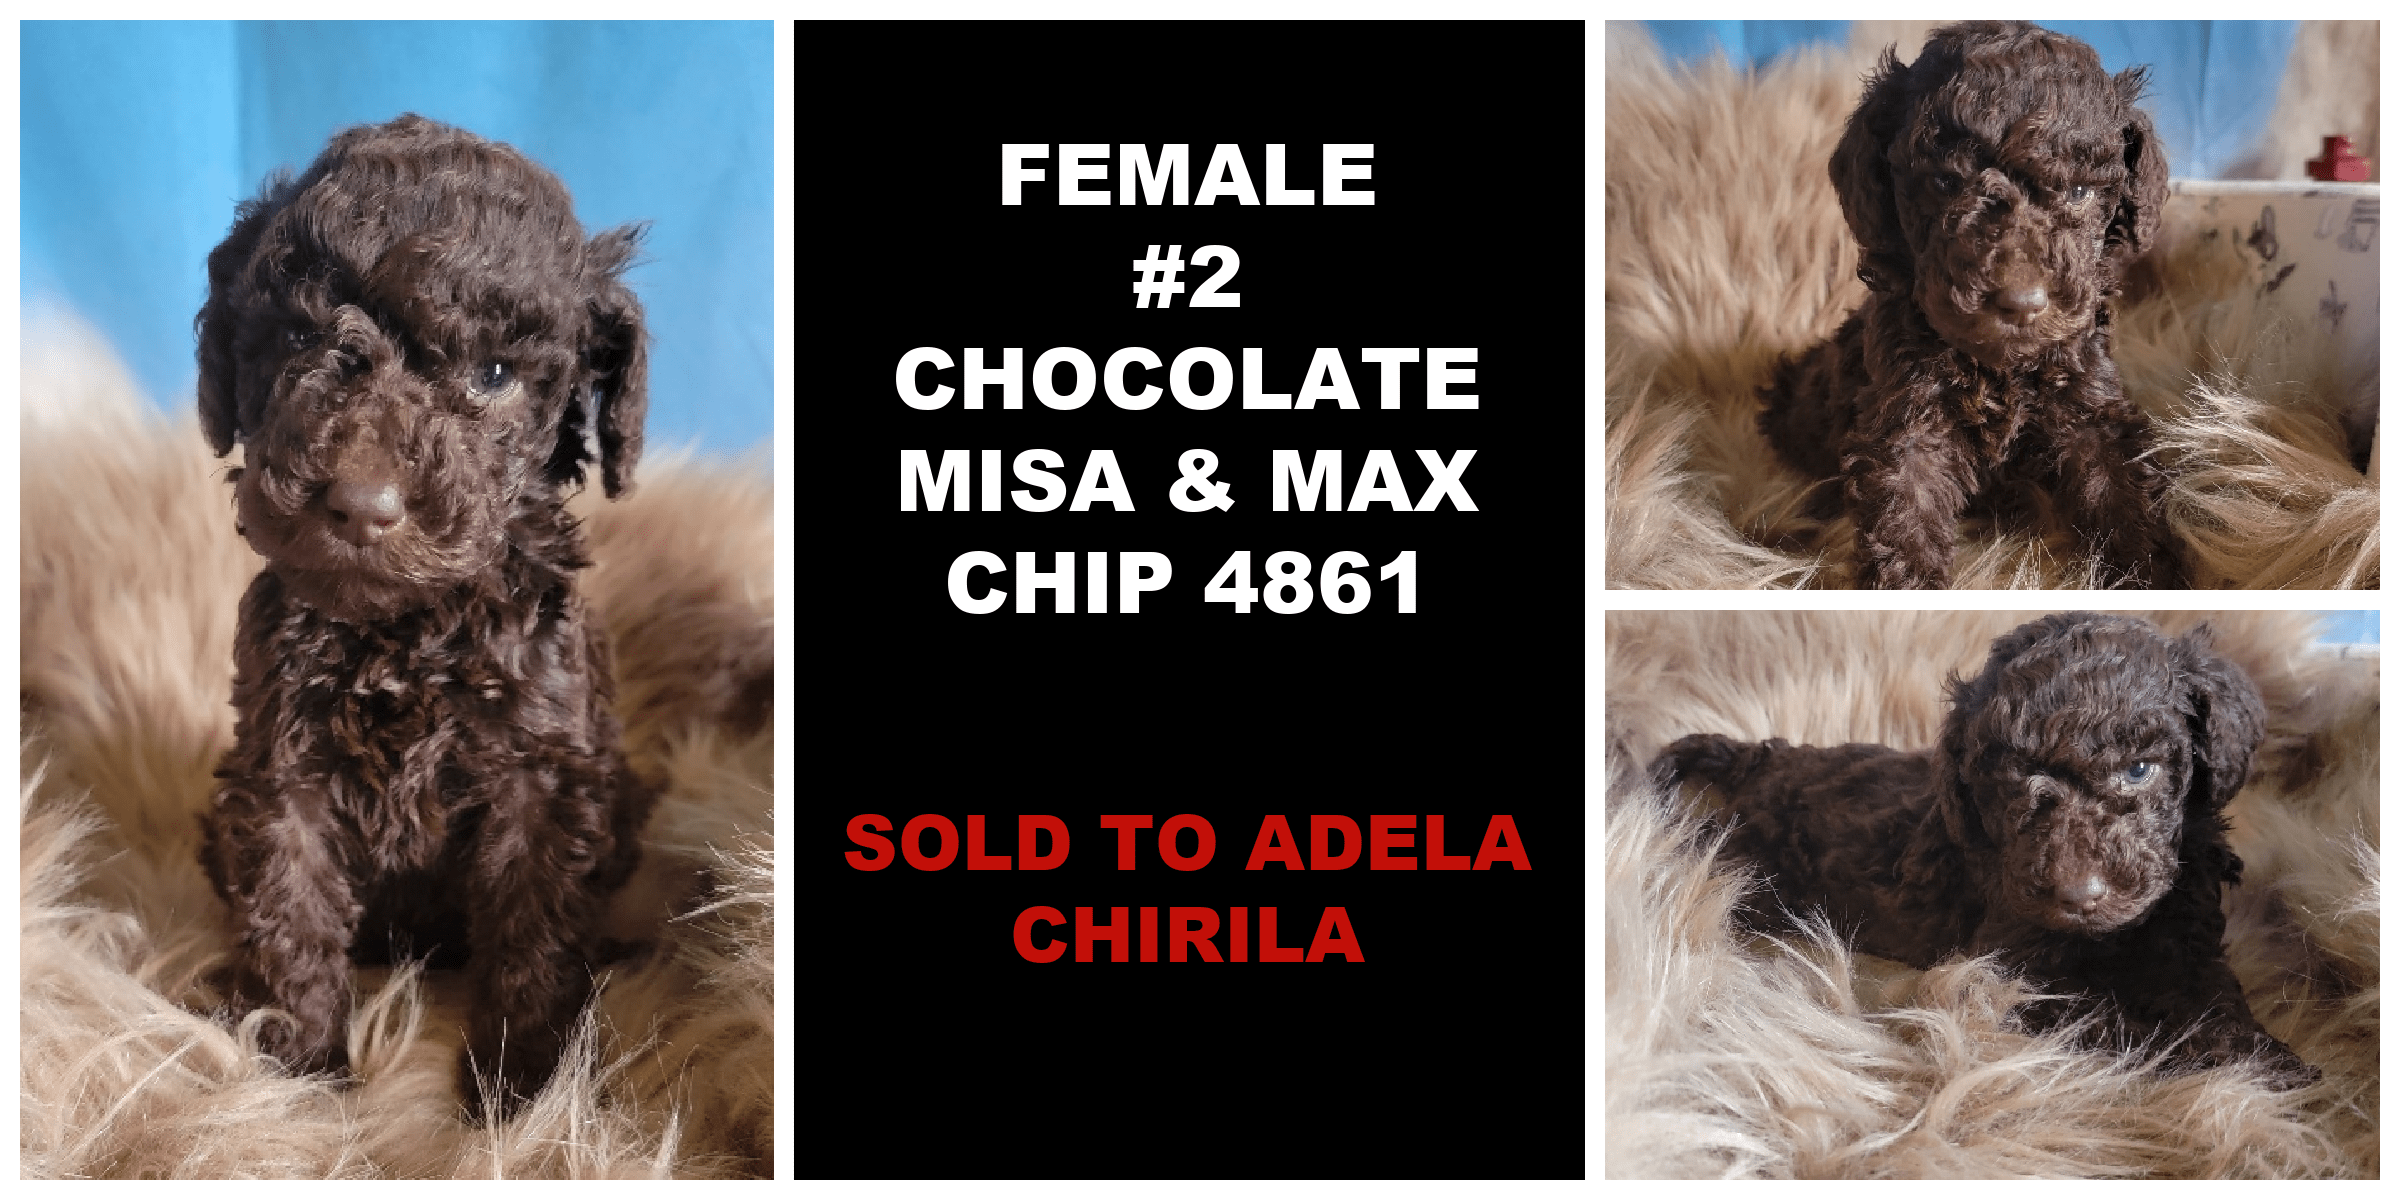 FEMALE 2 CHOCOLATE MISA MAX CHIP 4861